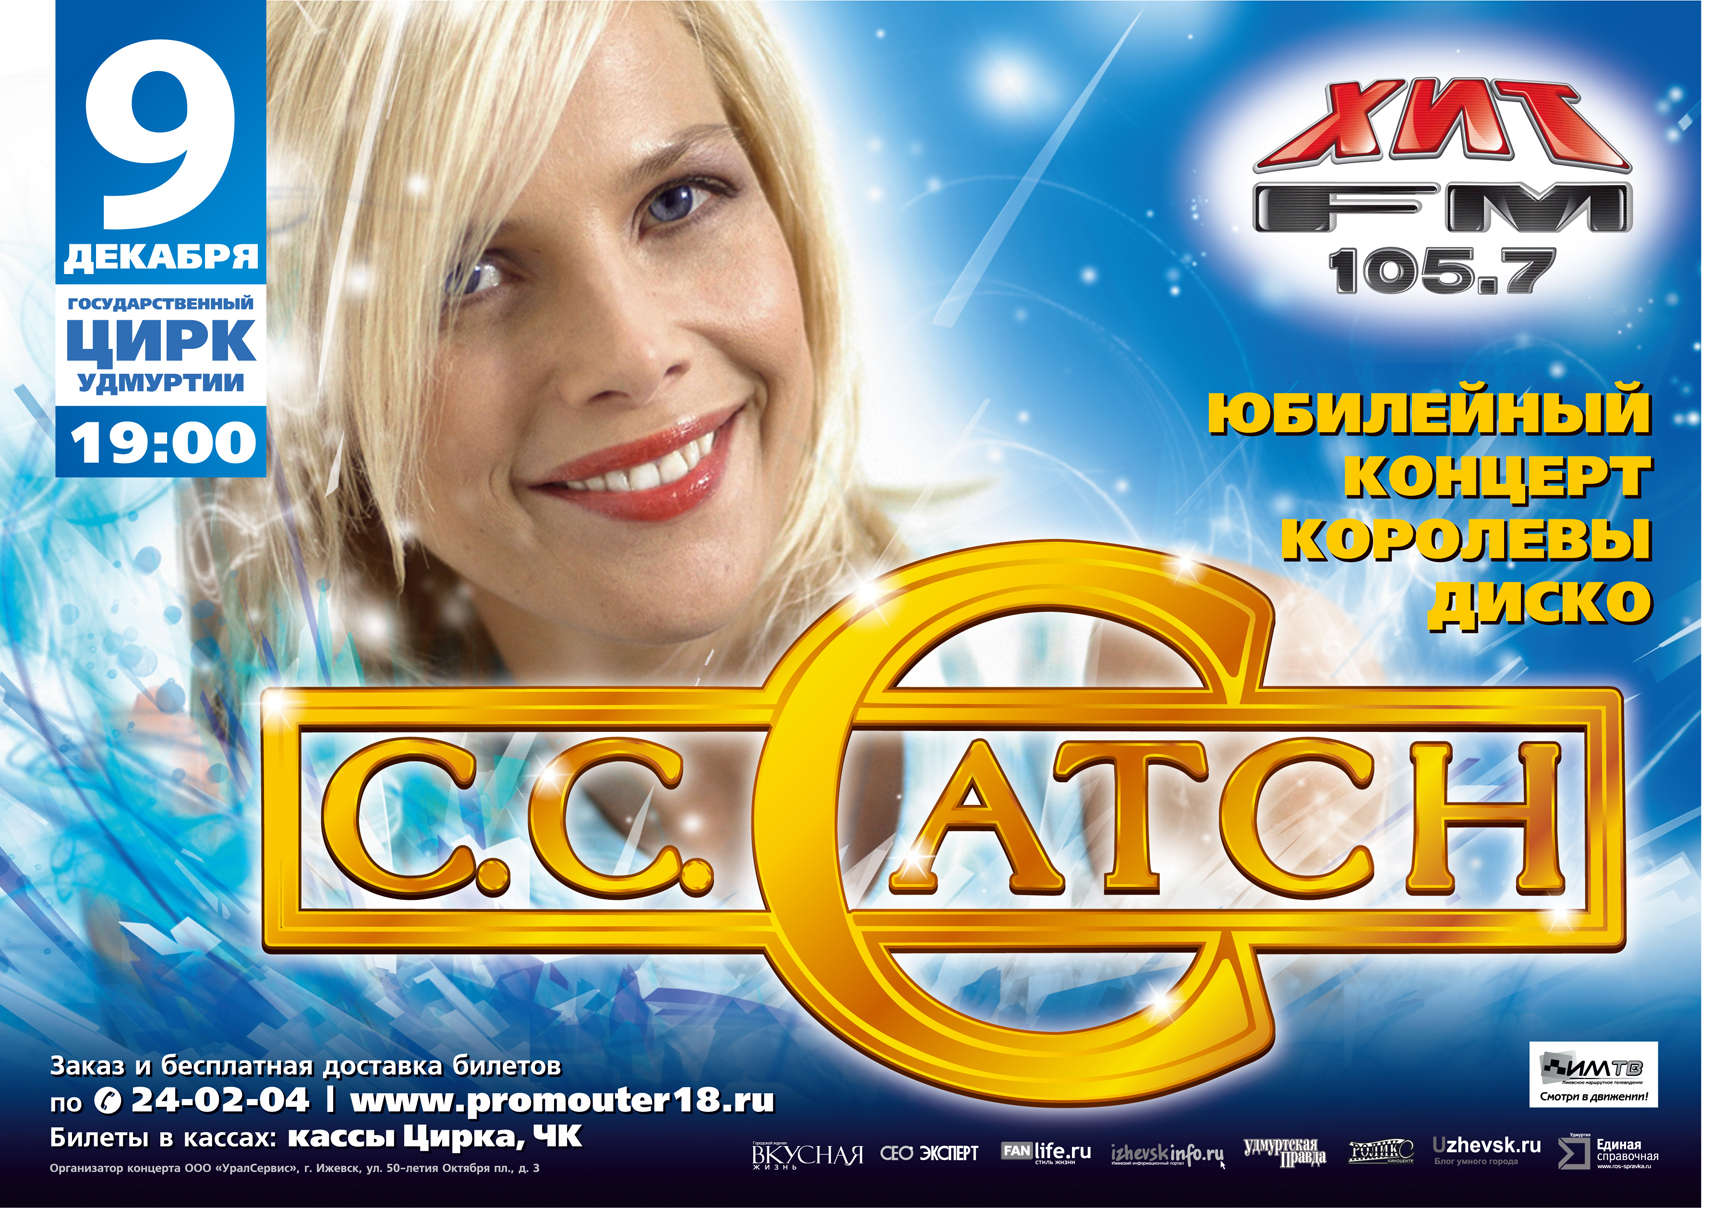 Мировой юбилейный тур C.C.CATCH в Ижевске!